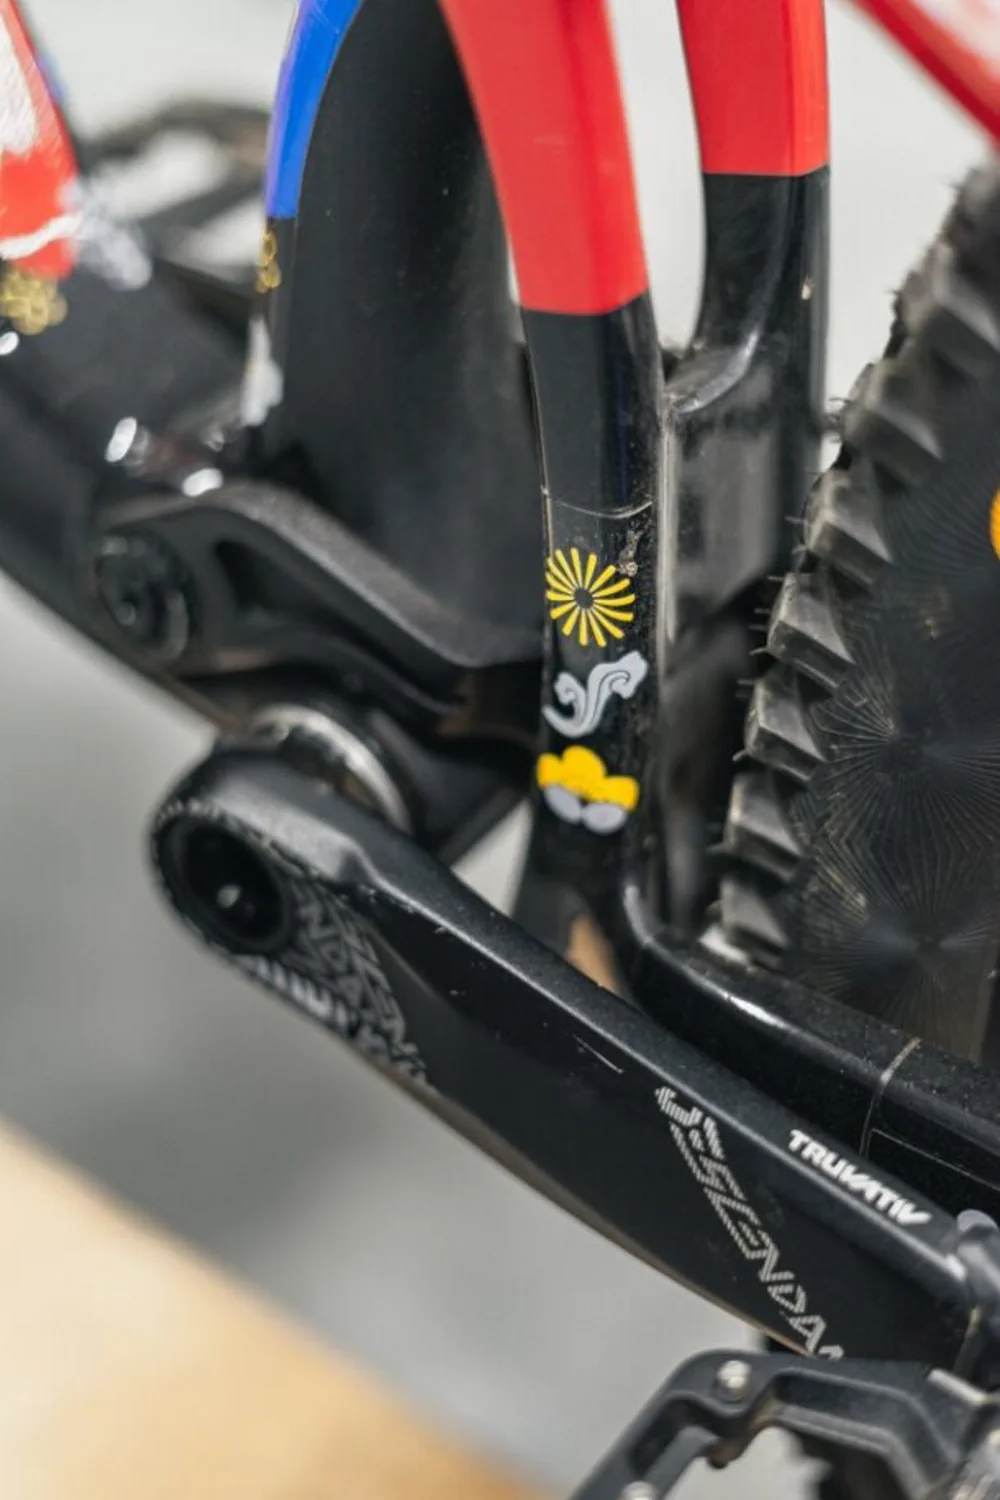 Widok na wahacz rowerowy z artystycznym wzorem na folii ochronnej i żółtą gwiazdką